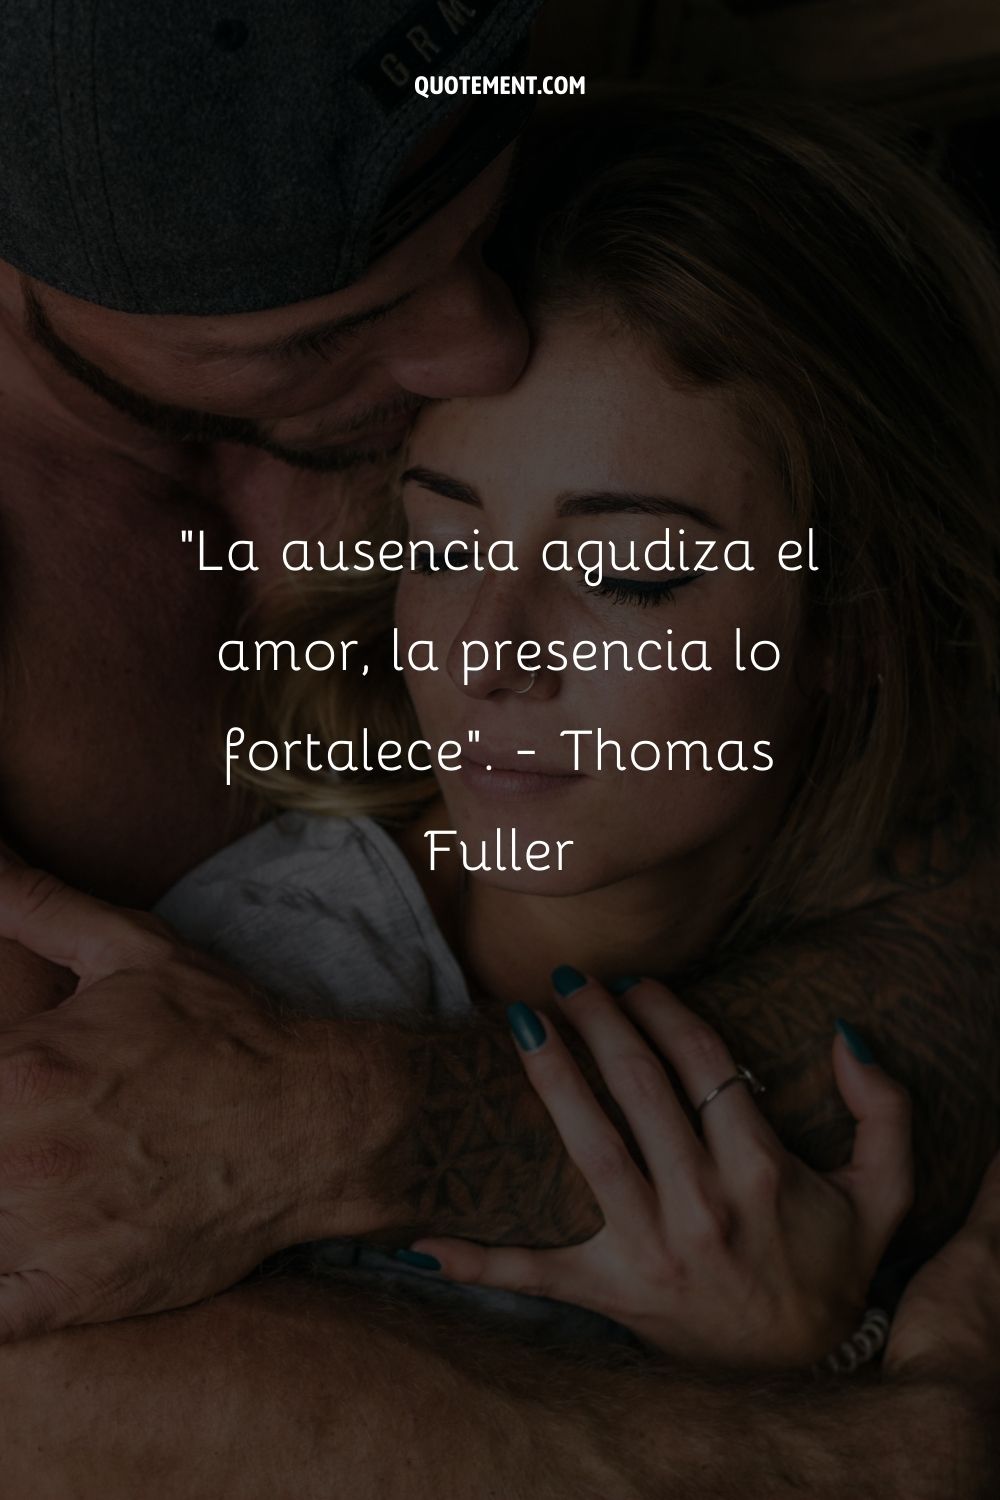 La ausencia agudiza el amor, la presencia lo fortalece. - Thomas Fuller